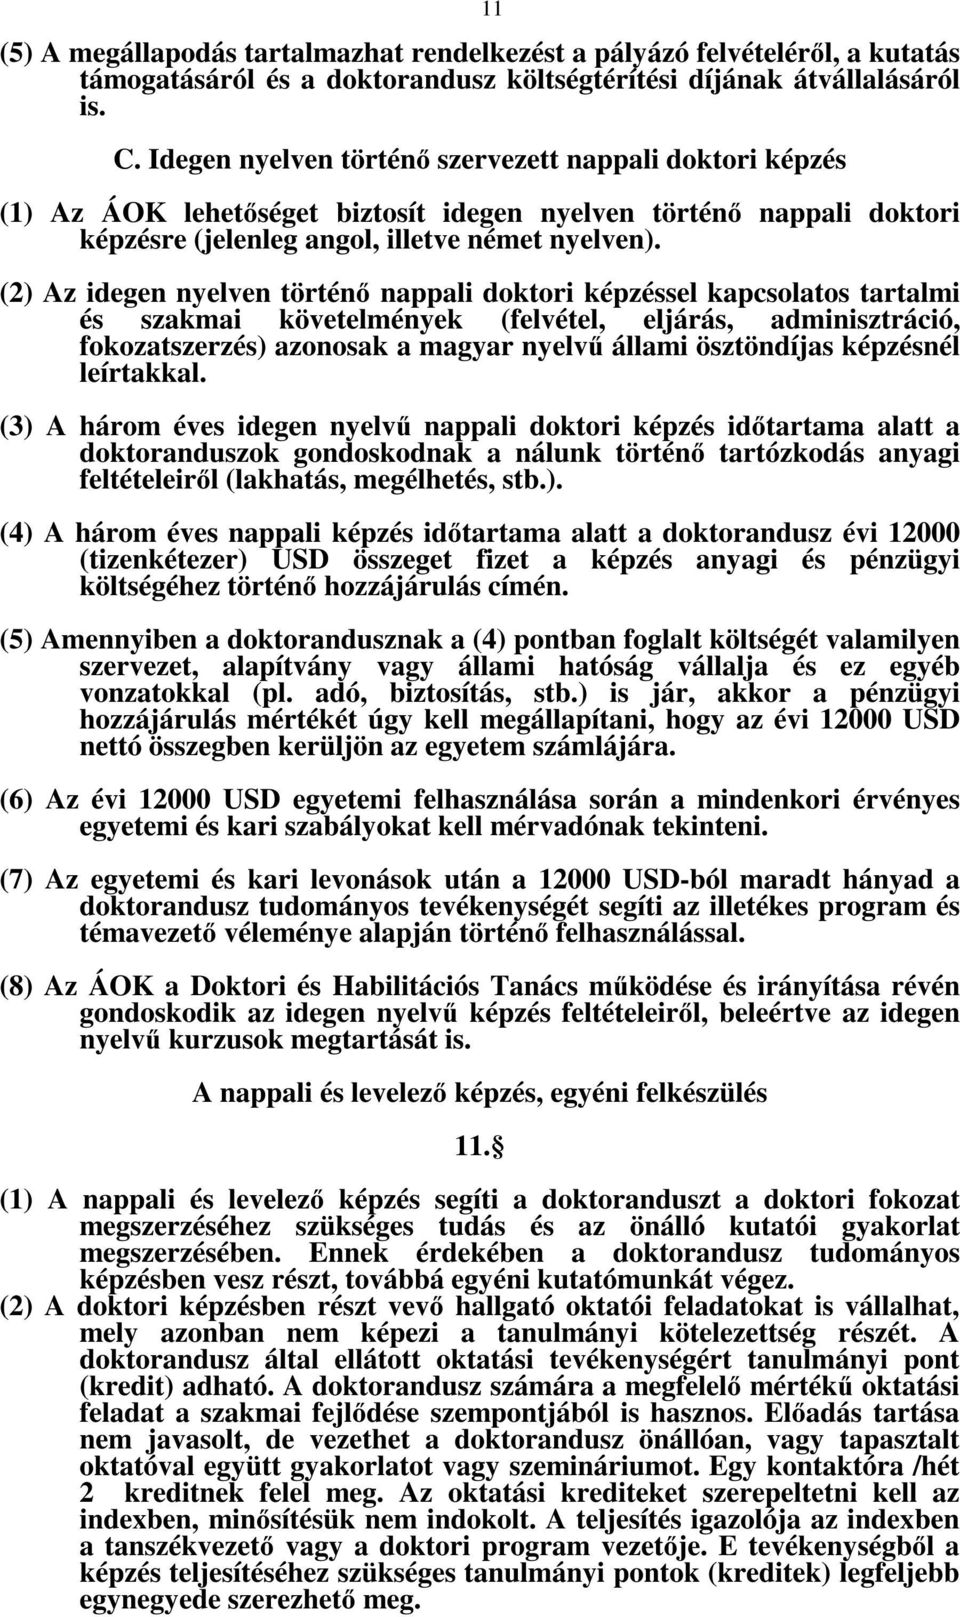 (2) Az idegen nyelven történő nappali doktori képzéssel kapcsolatos tartalmi és szakmai követelmények (felvétel, eljárás, adminisztráció, fokozatszerzés) azonosak a magyar nyelvű állami ösztöndíjas